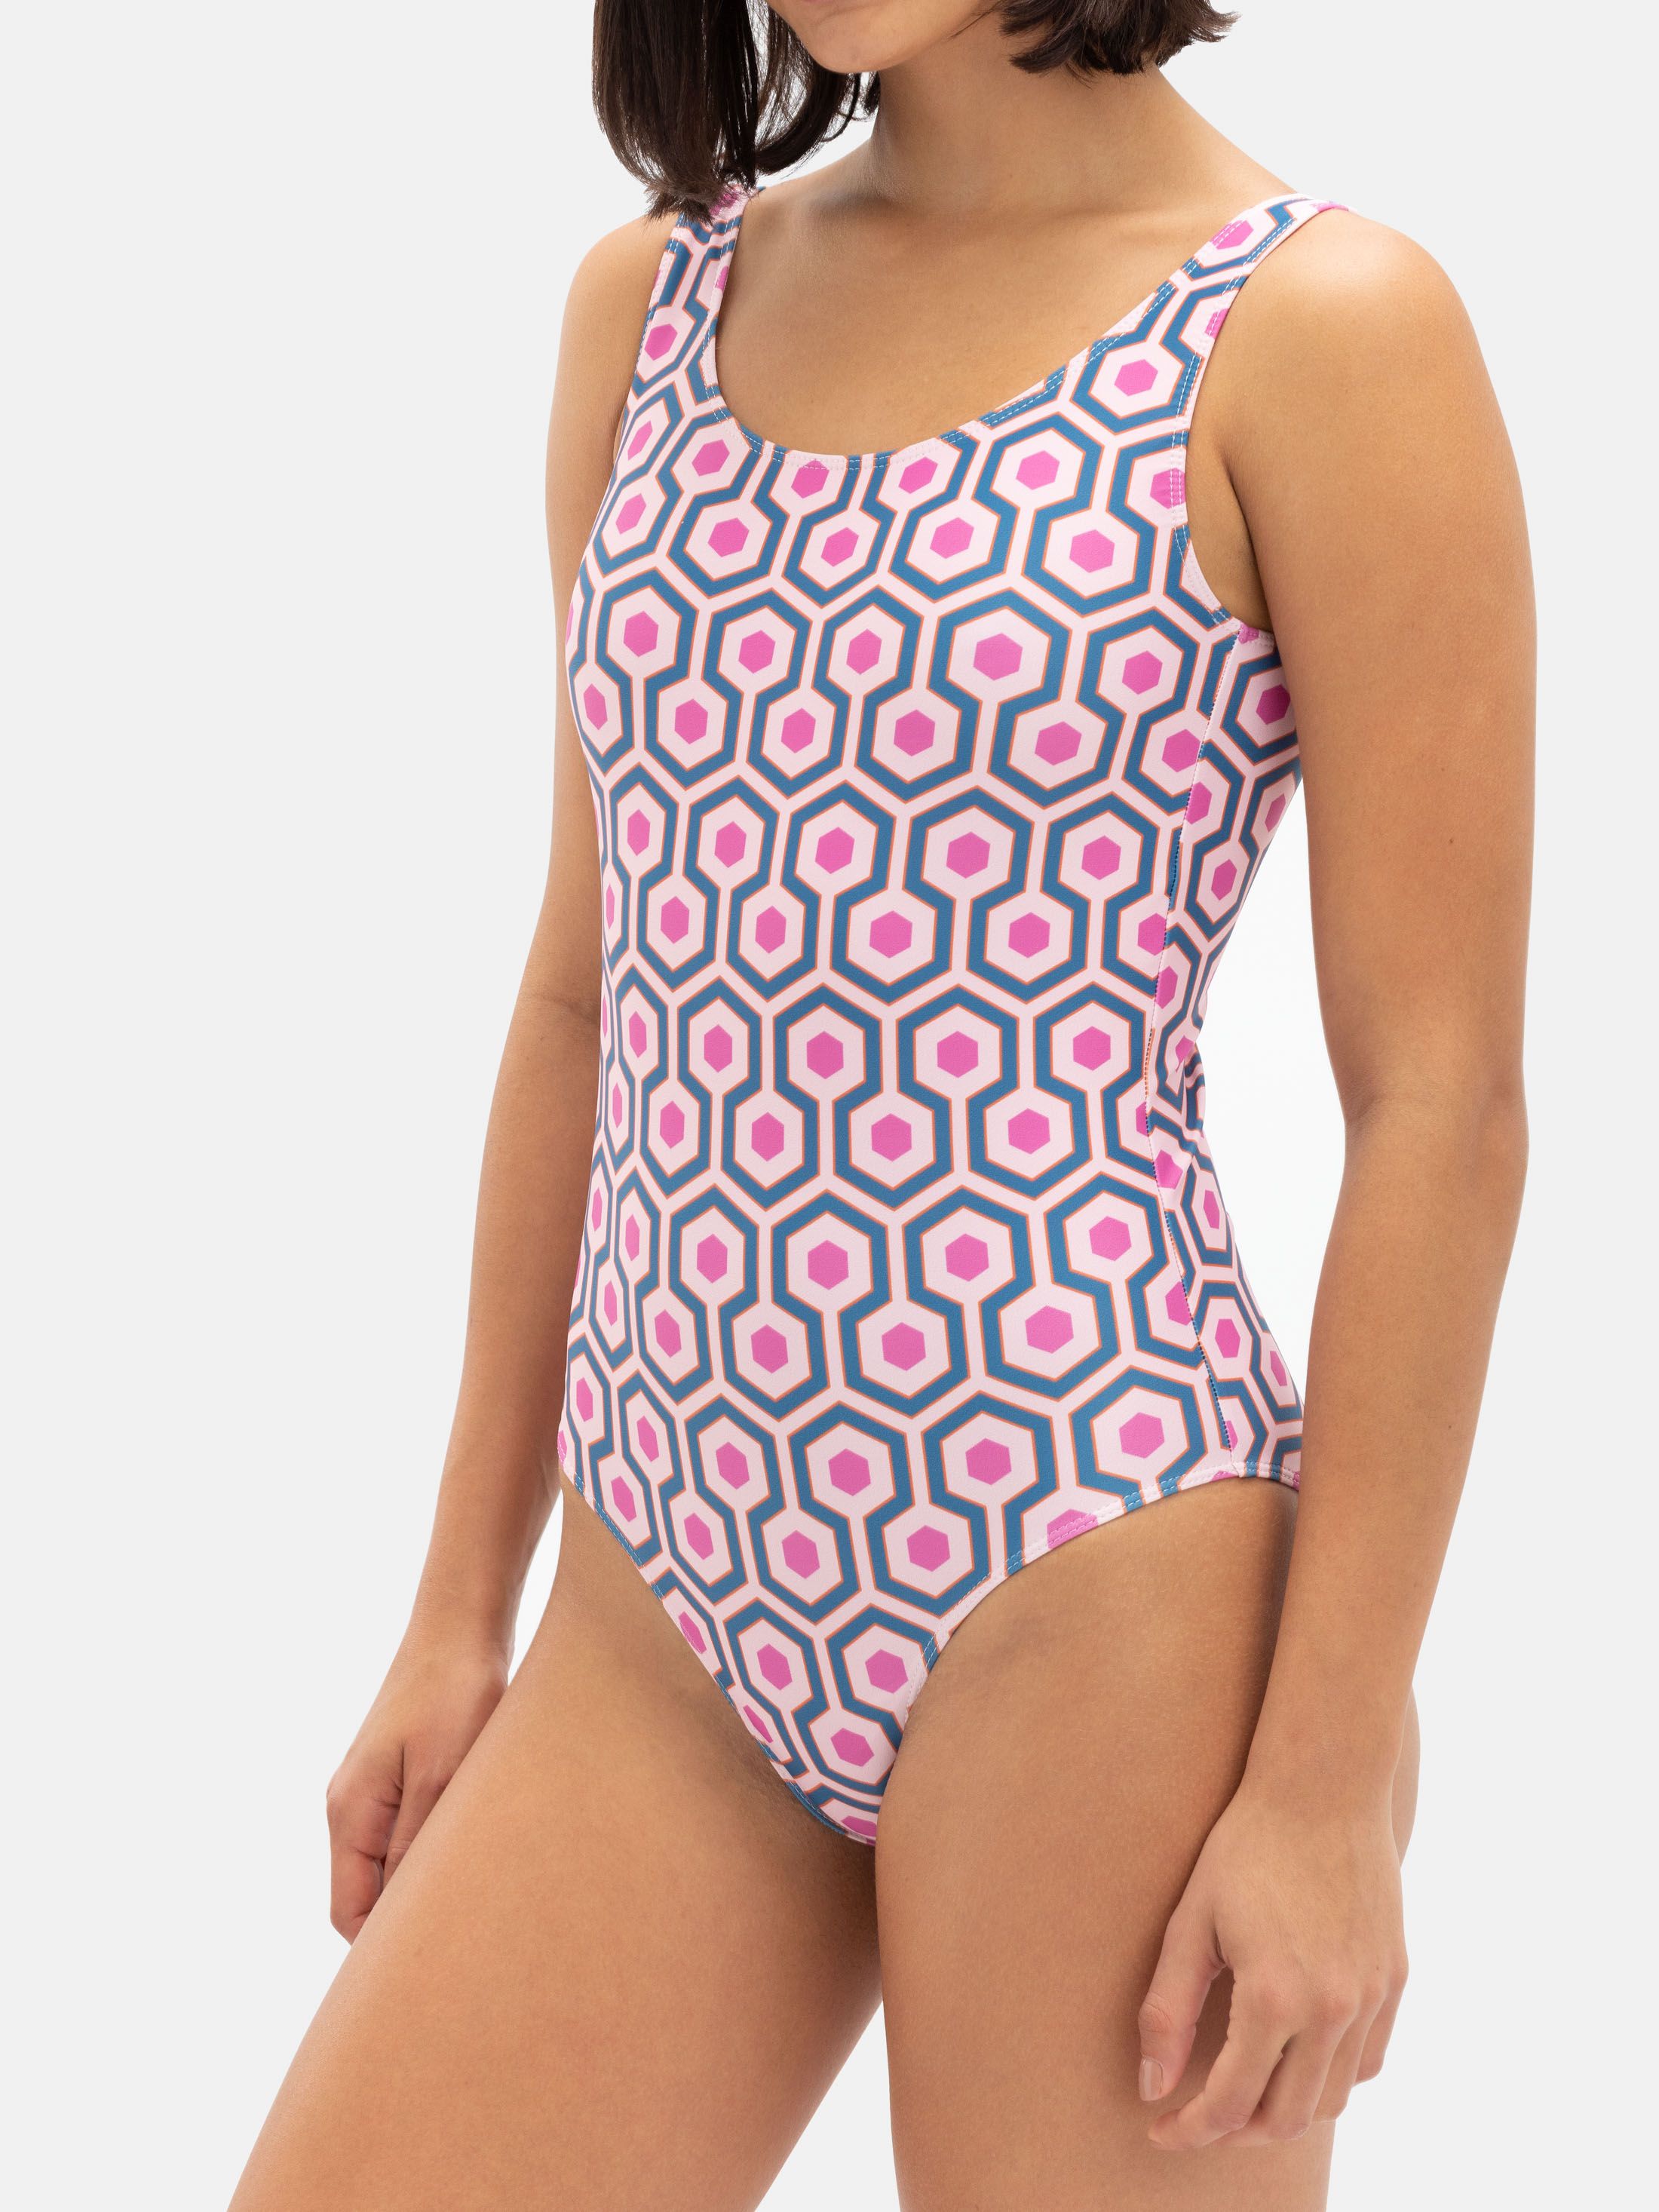 Design athletic swim suit